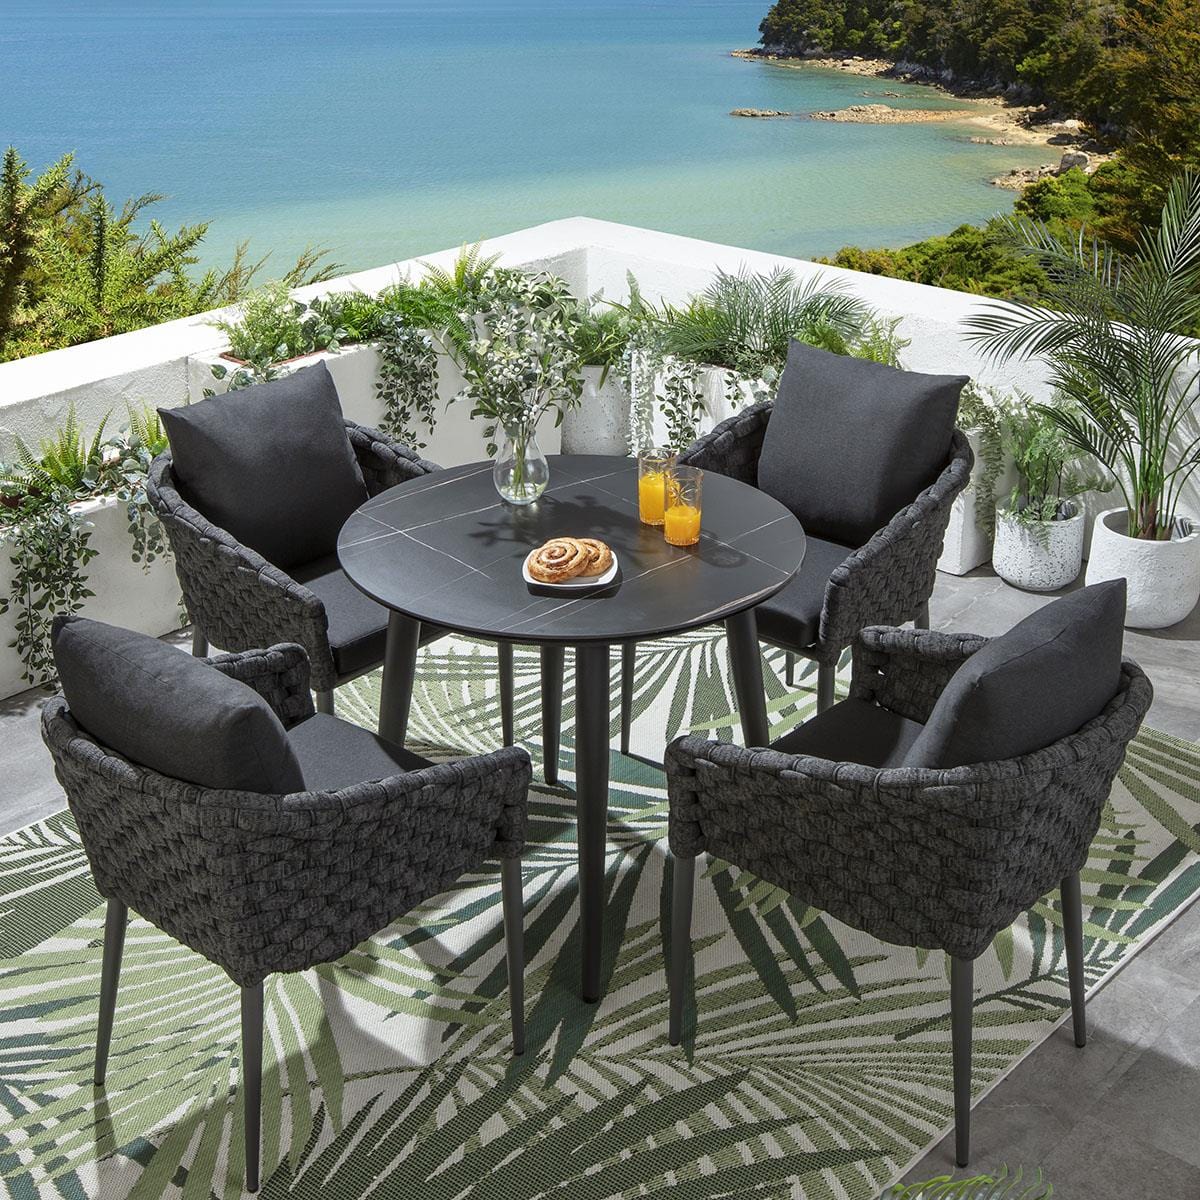 Quatropi Sundowner 4 Seater Round Ceramic Outdoor Dining Set Charcoal & Black